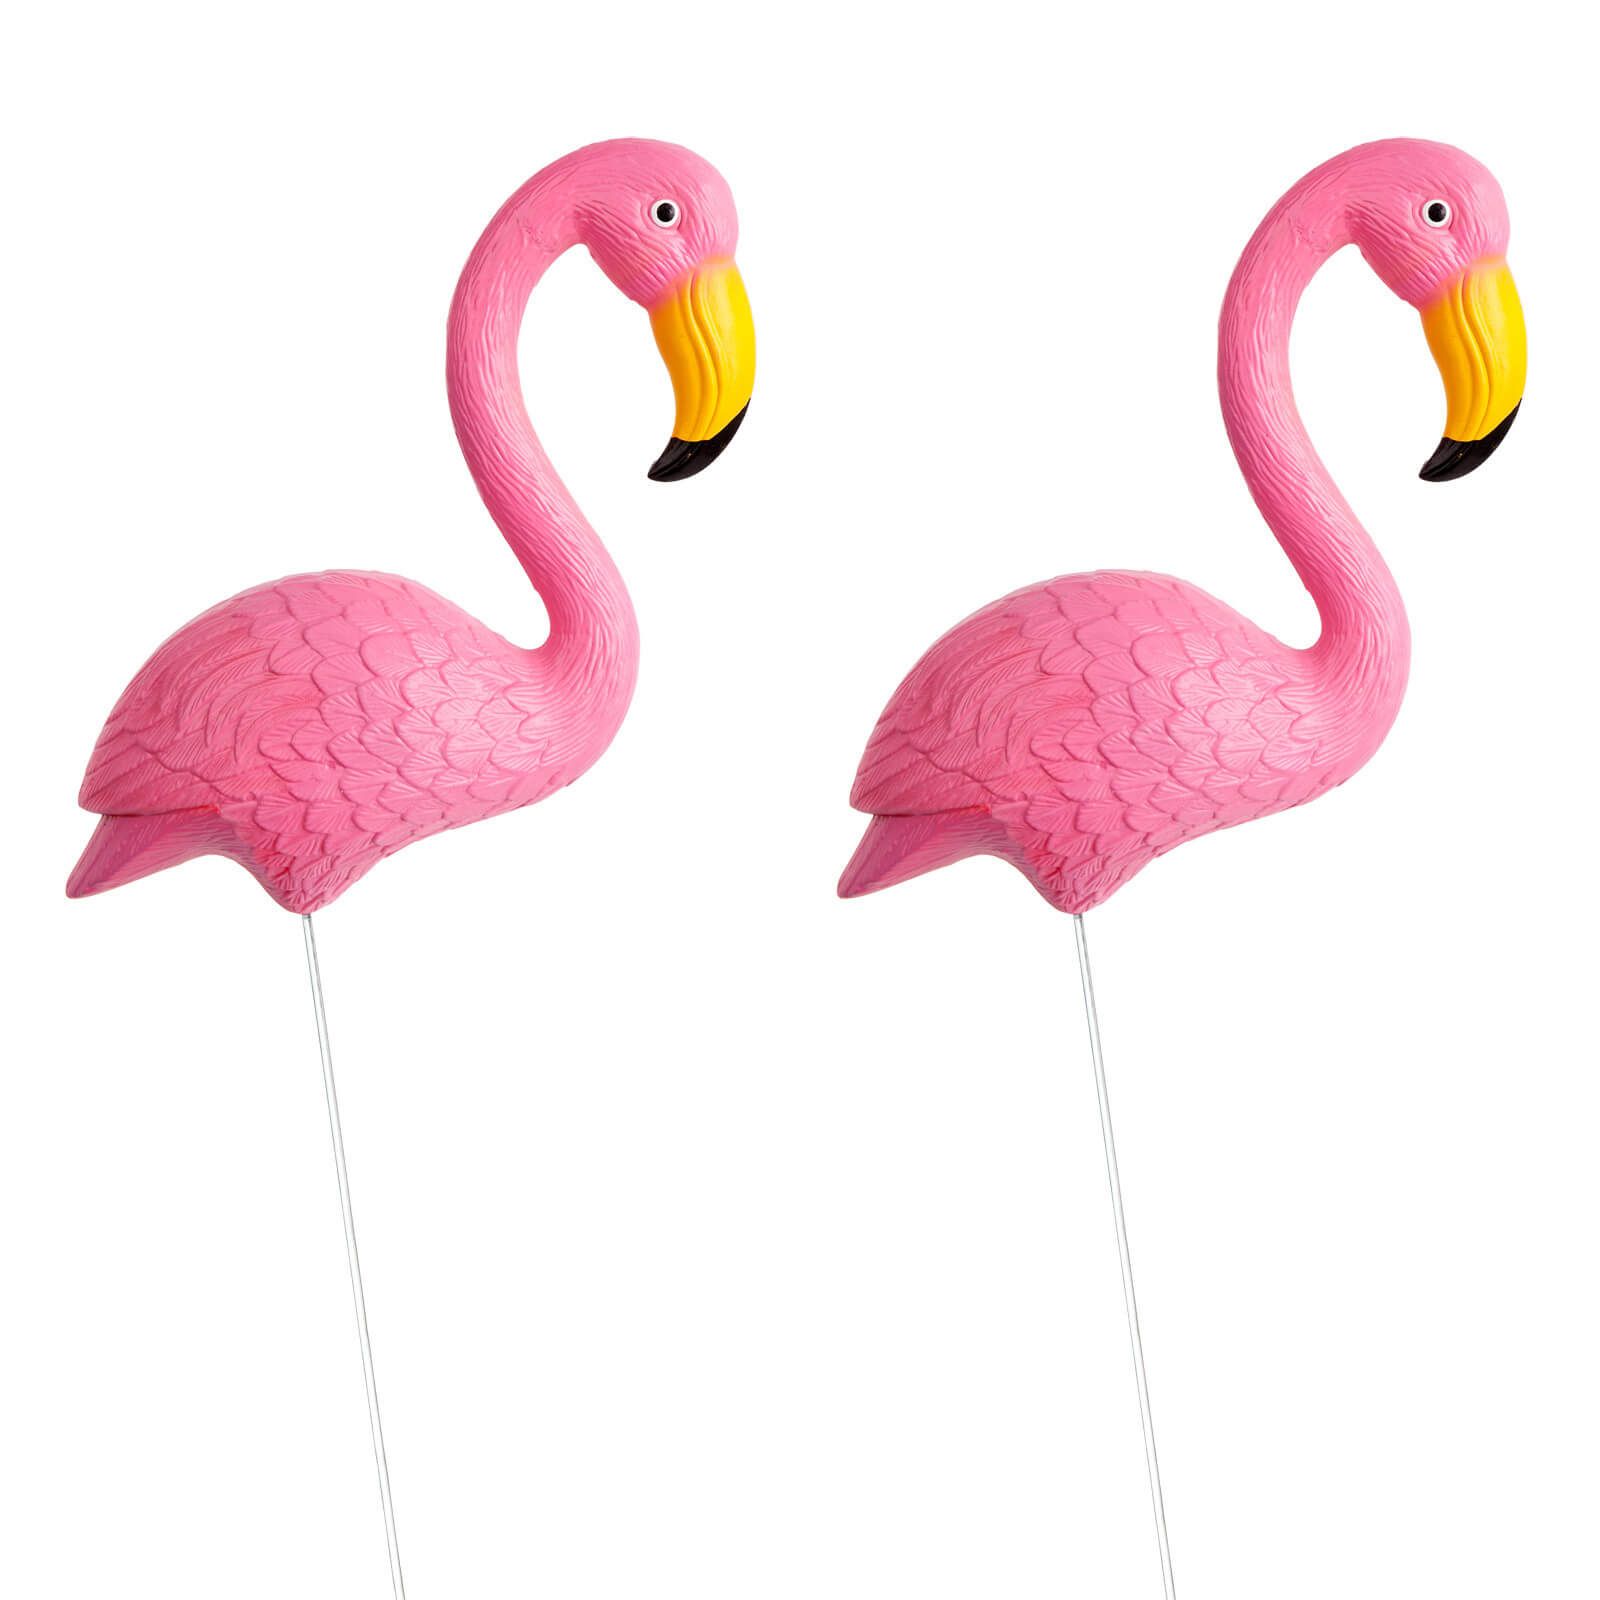 Garden Flamingos - Set de 2 pcs Sunnylife 